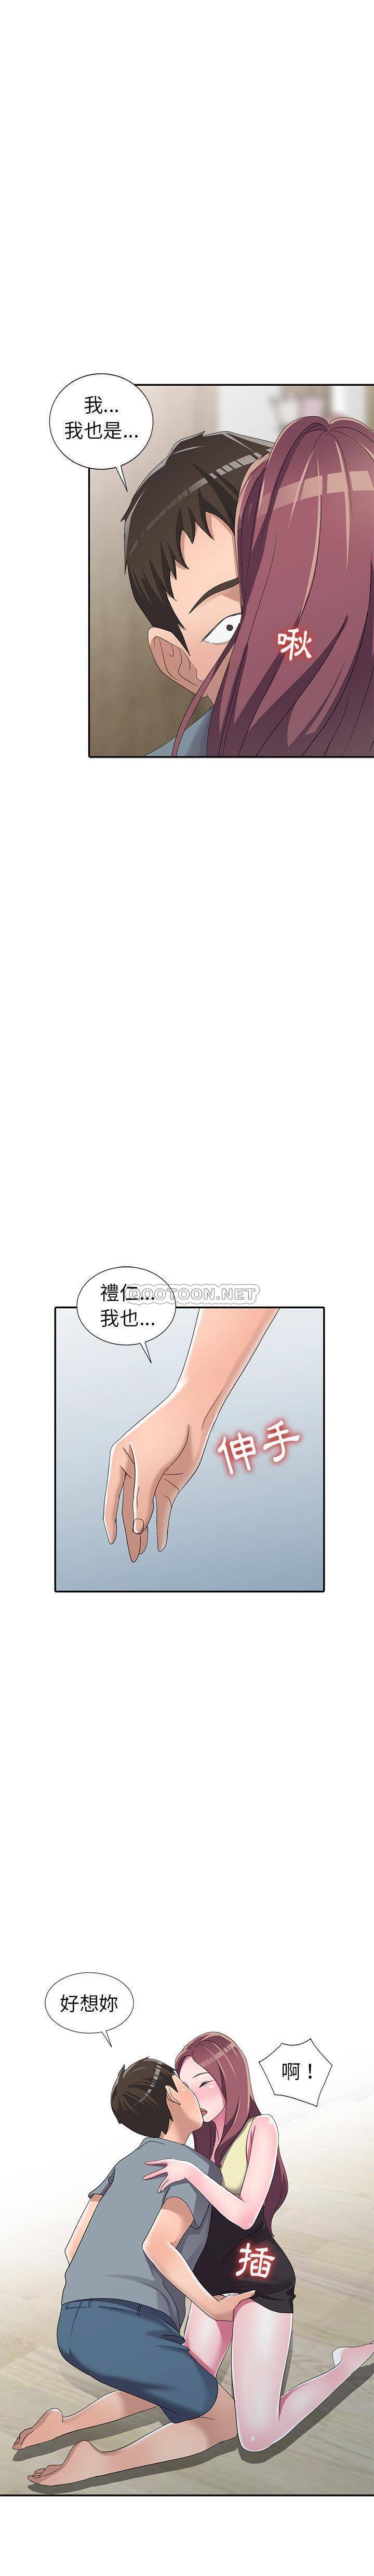 韩国污漫画 愛的第一課 第13话 20